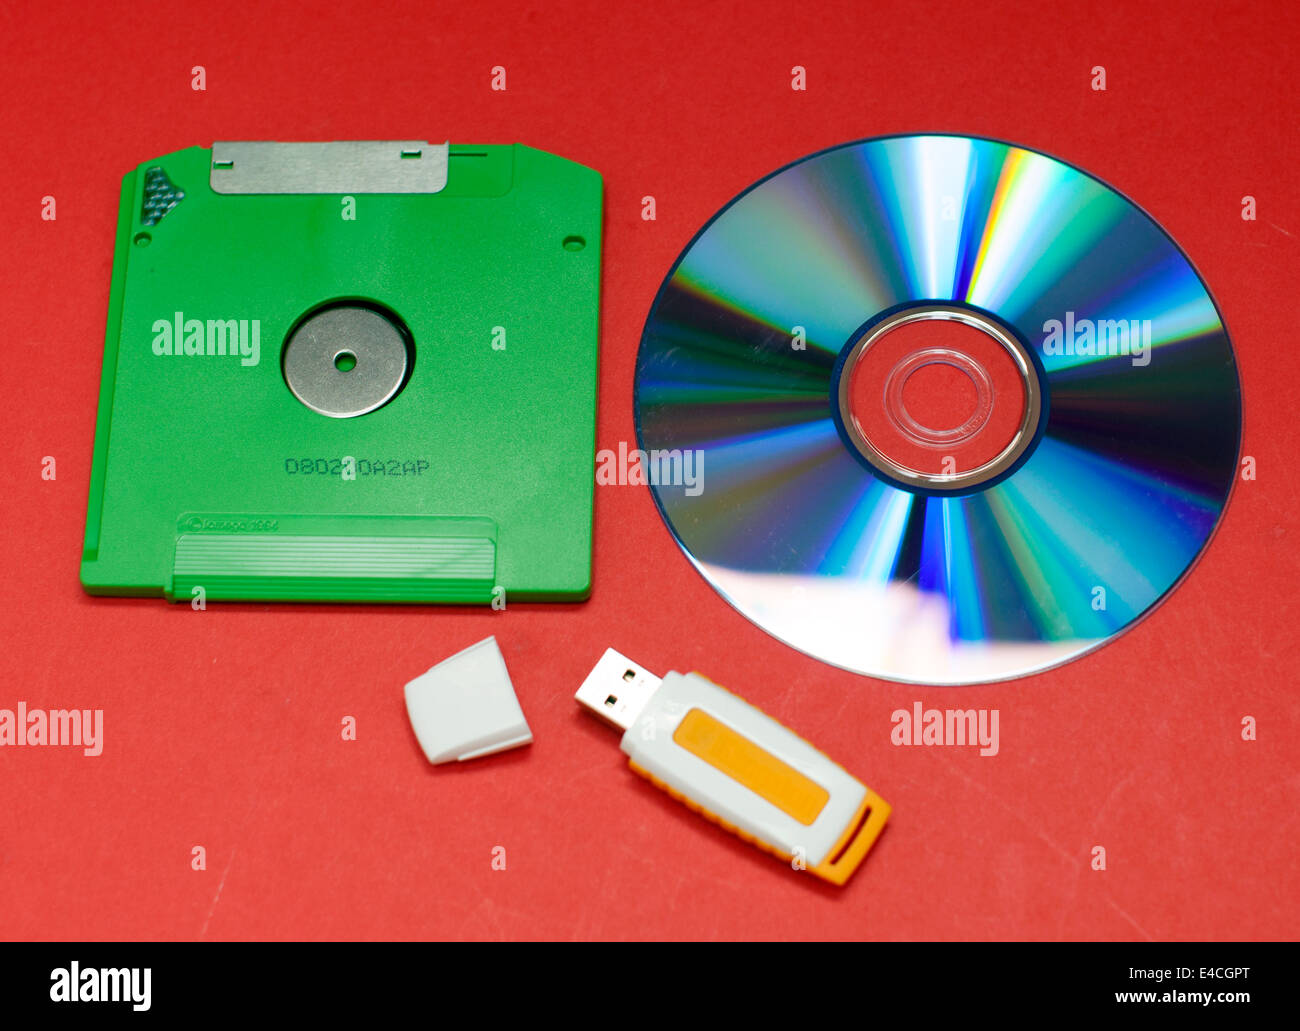 3 generazioni di archiviazione dei dati: unità floppy disk, DVD e memory stick USB Foto Stock